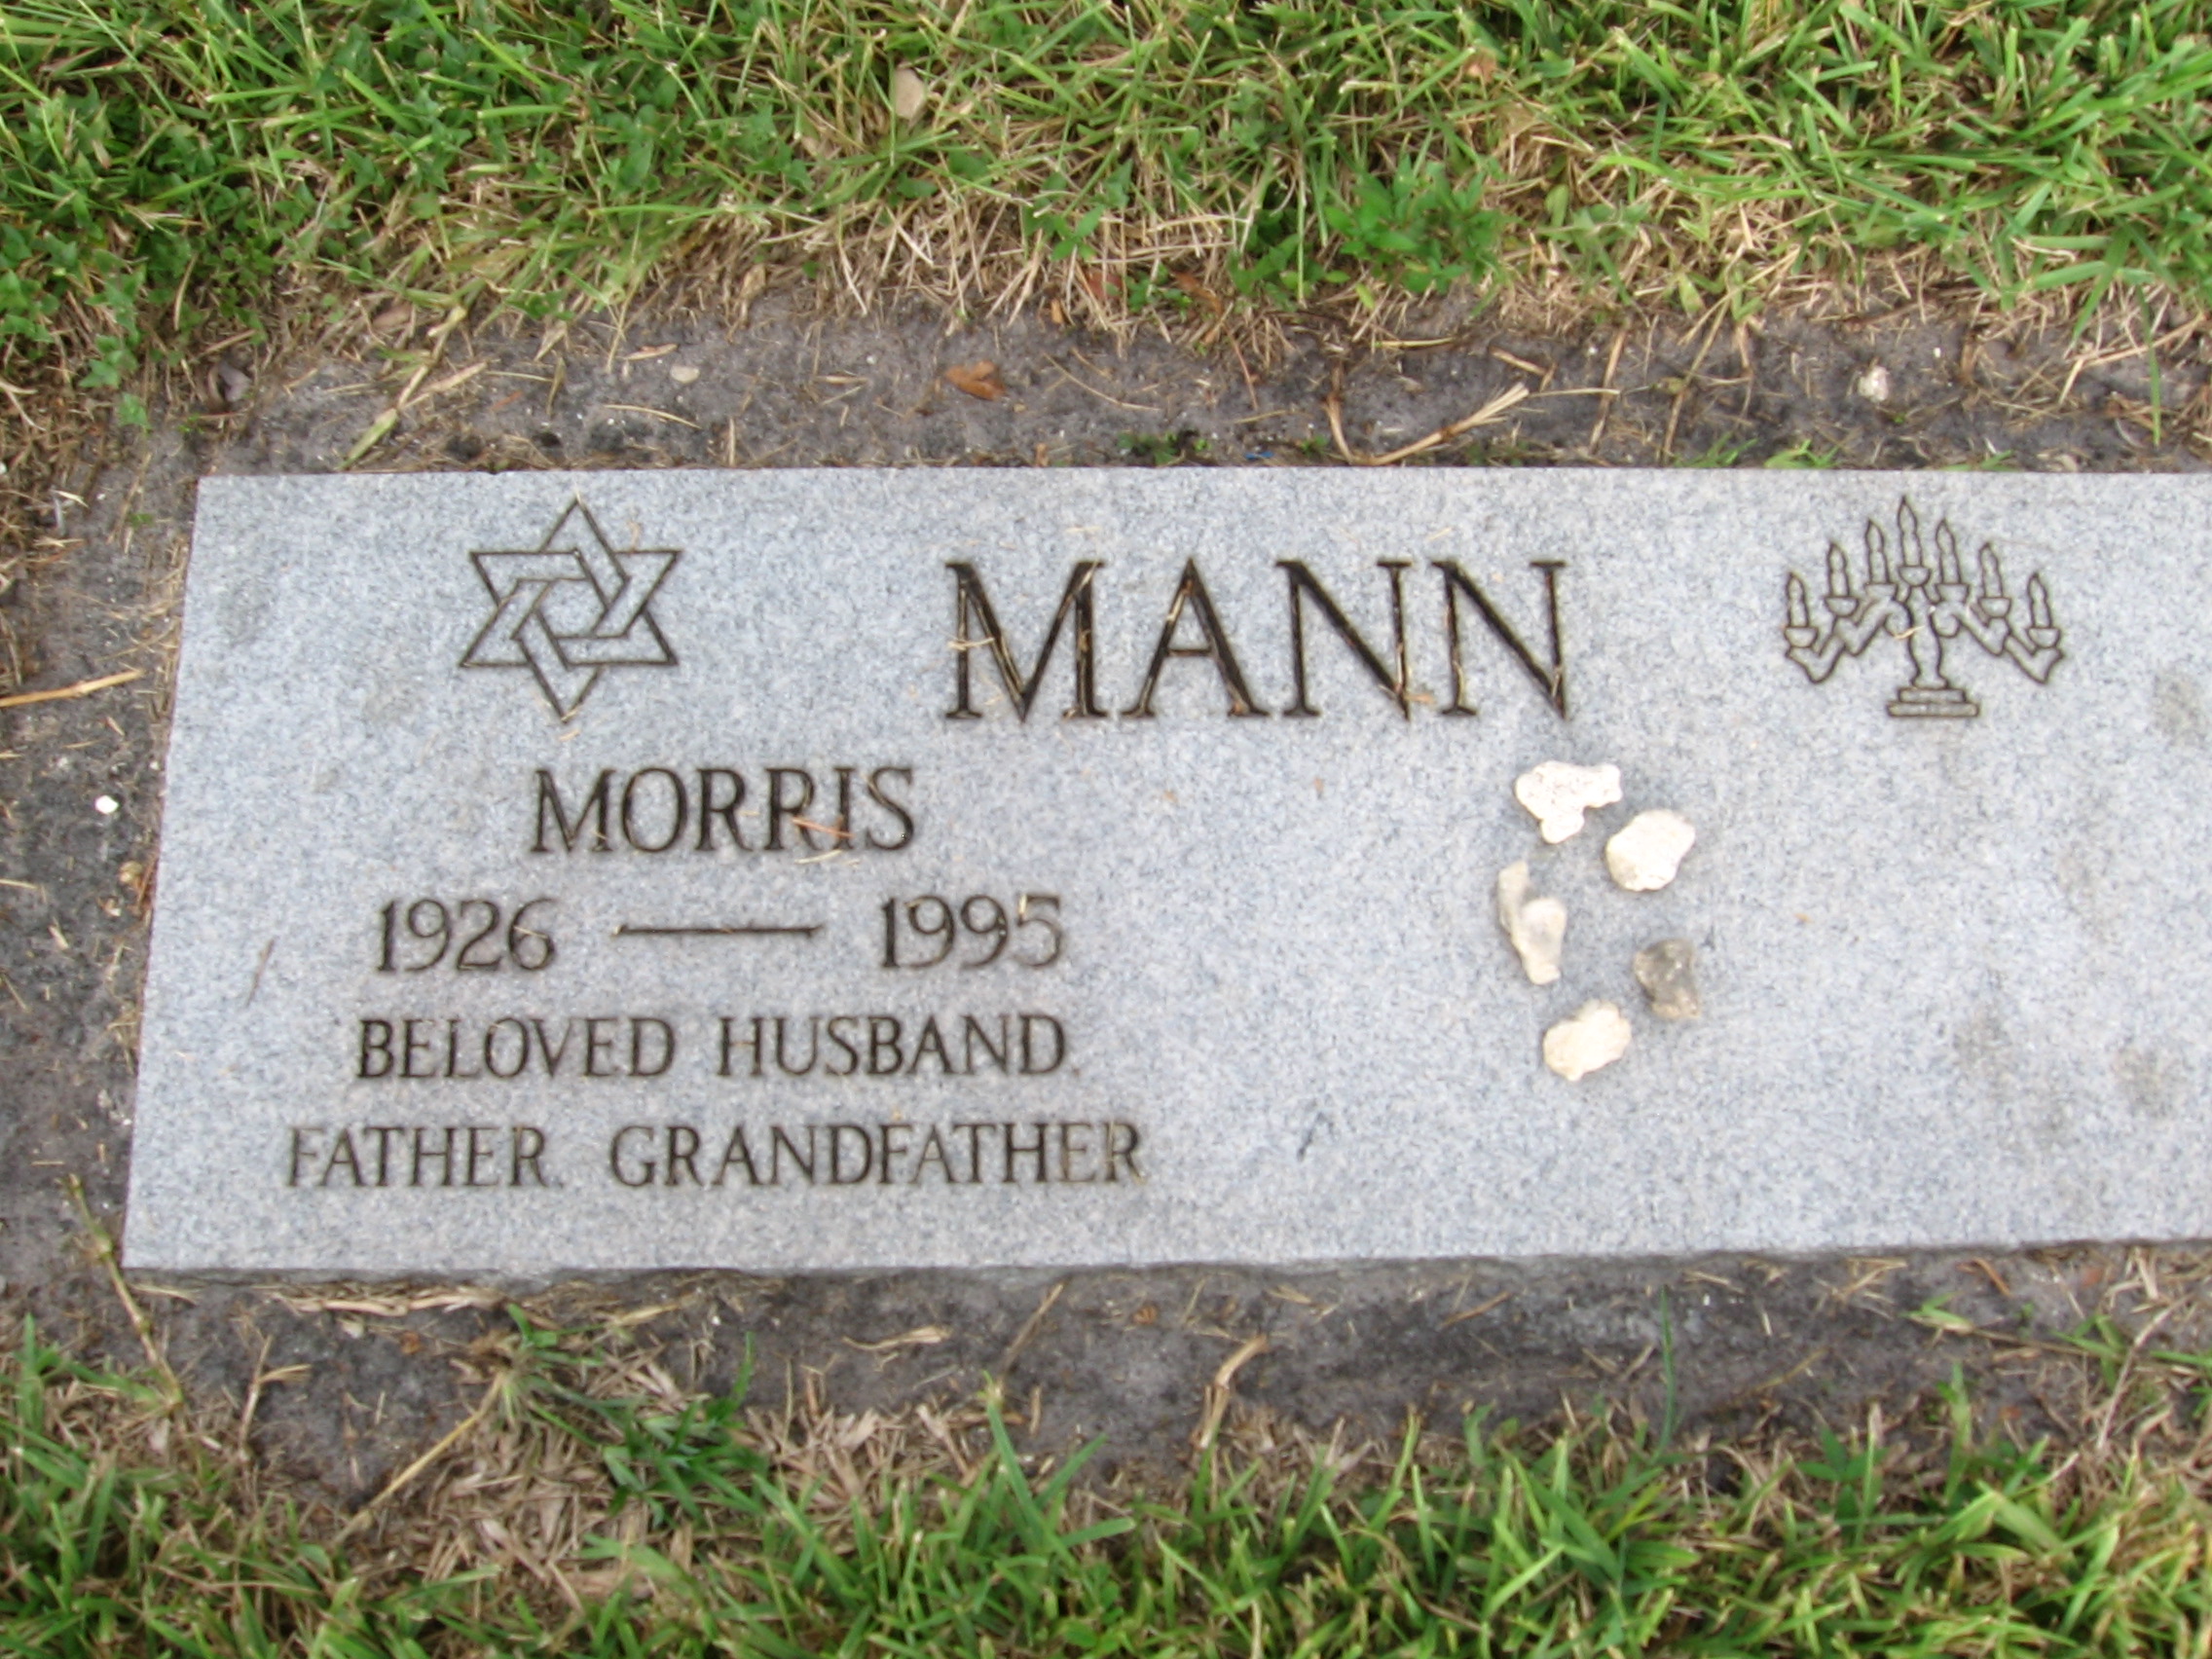 Morris Mann